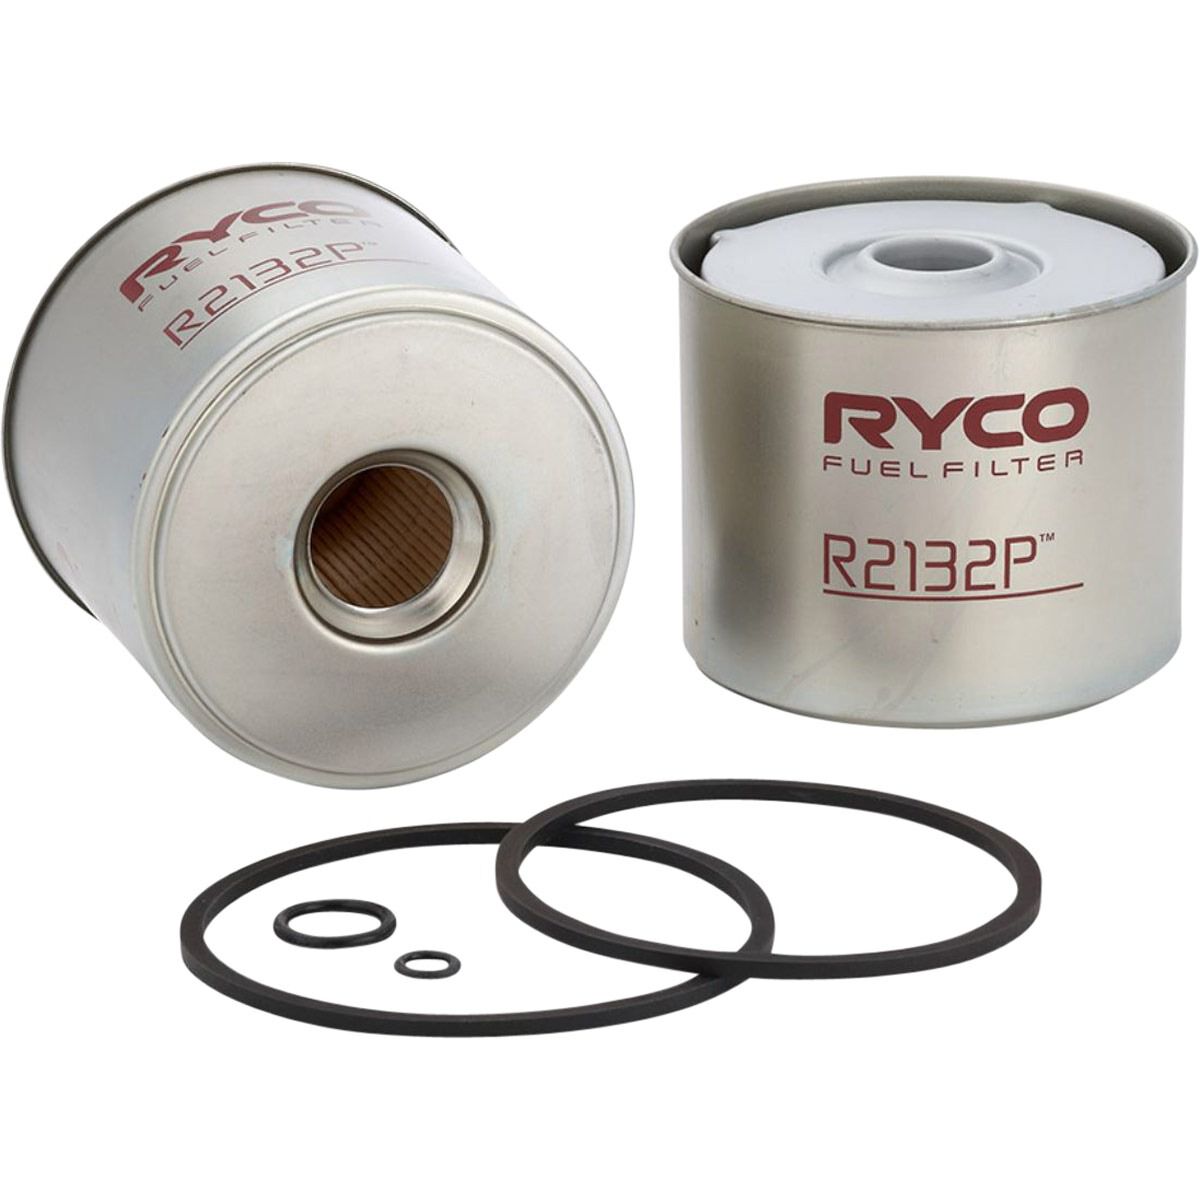 Ryco Fuel Filter - R2132P, , scaau_hi-res